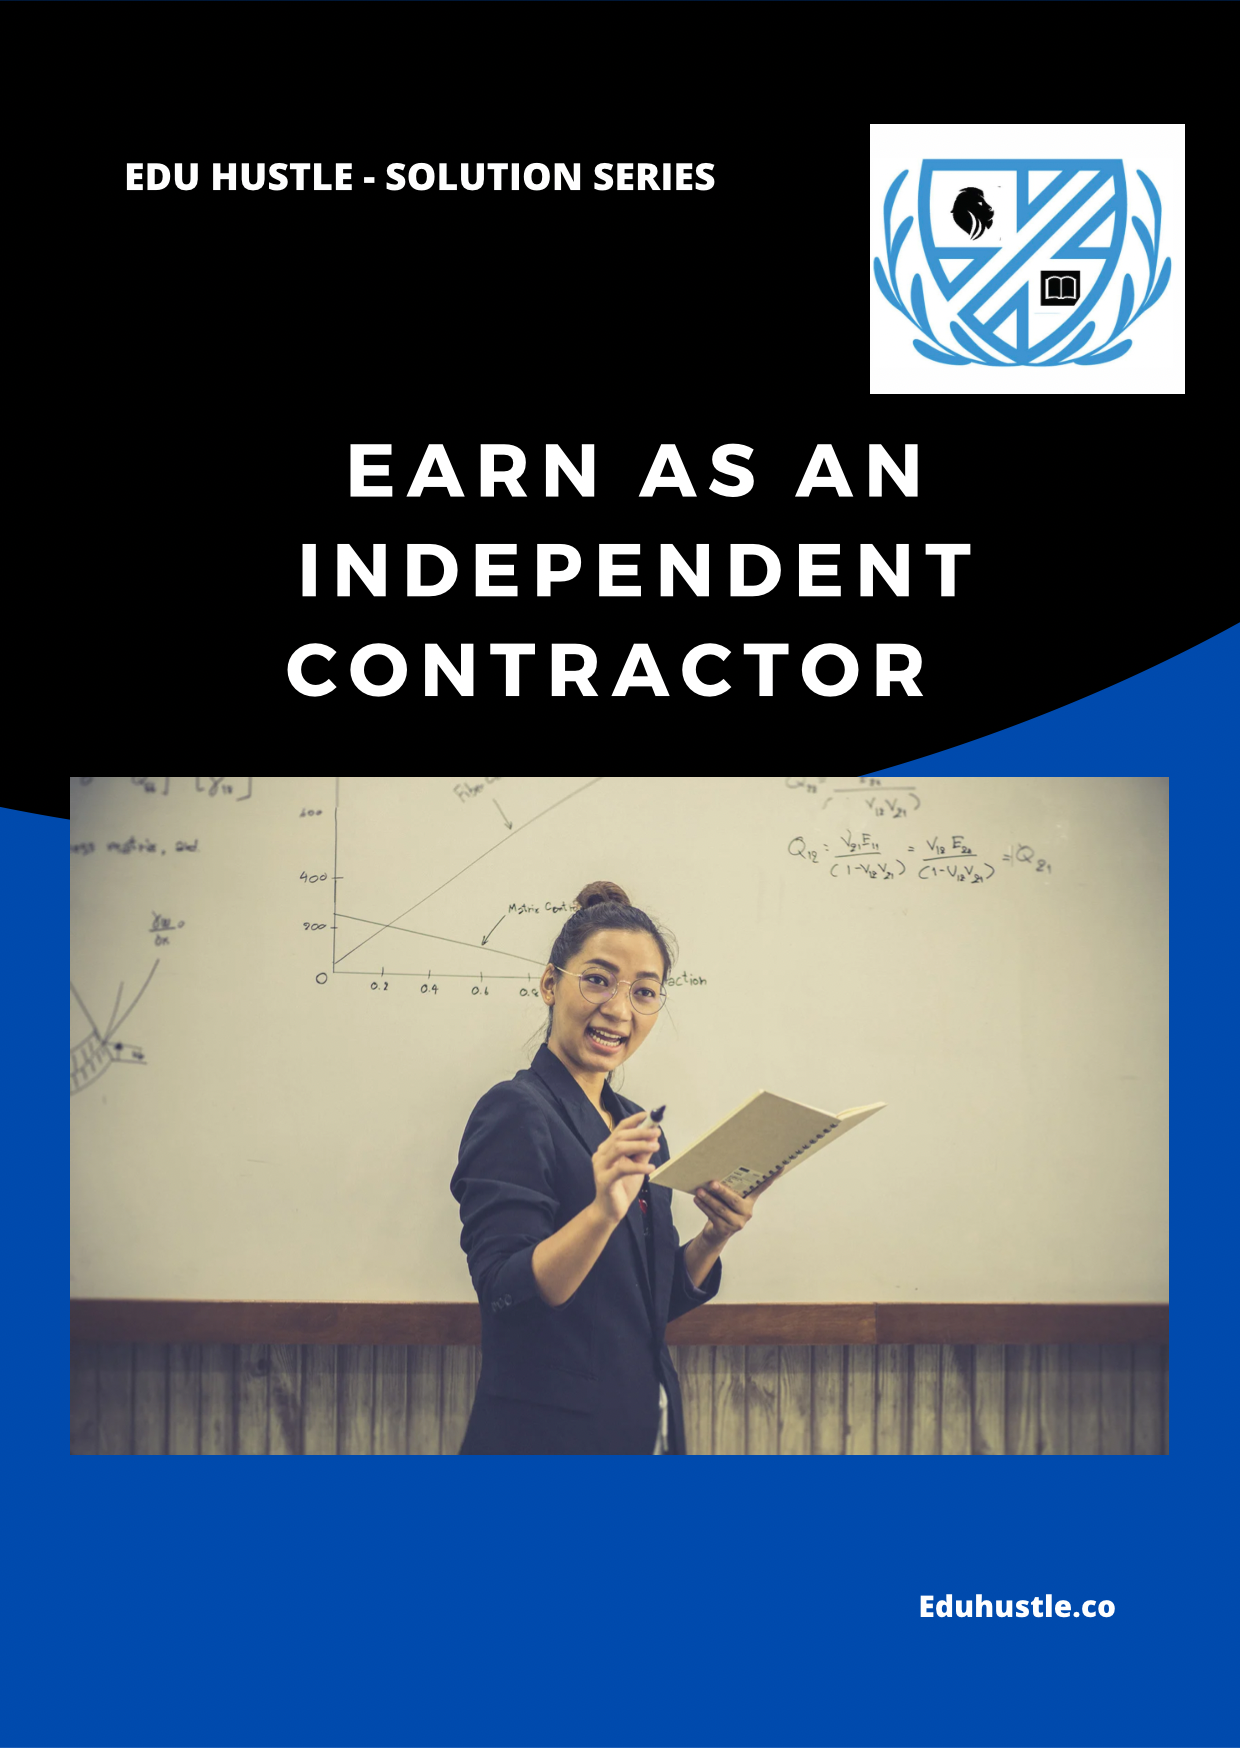 Earn as an Independent Contractor (Webinar) - EDU HUSTLE